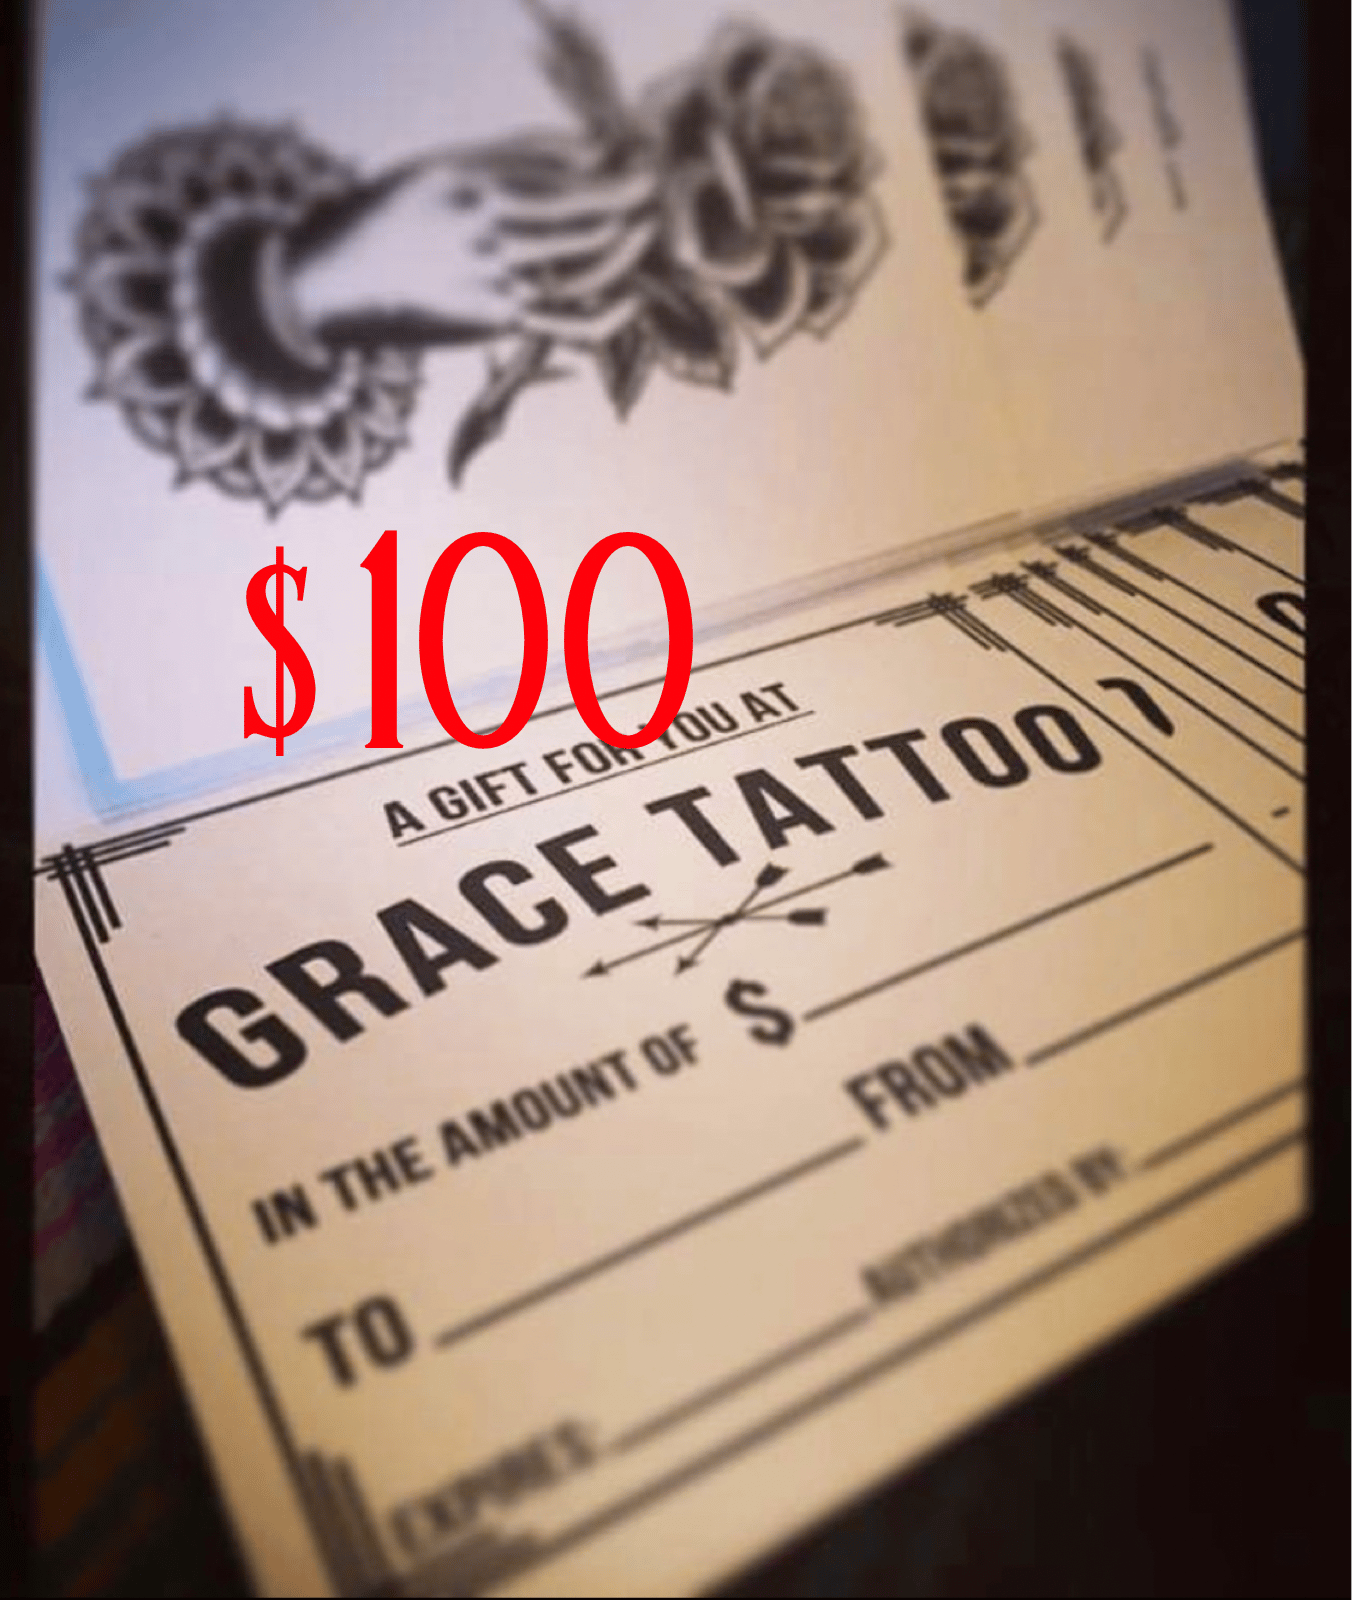 Alive By Grace Tattoo Lettering by Rhianna Wurman on Dribbble